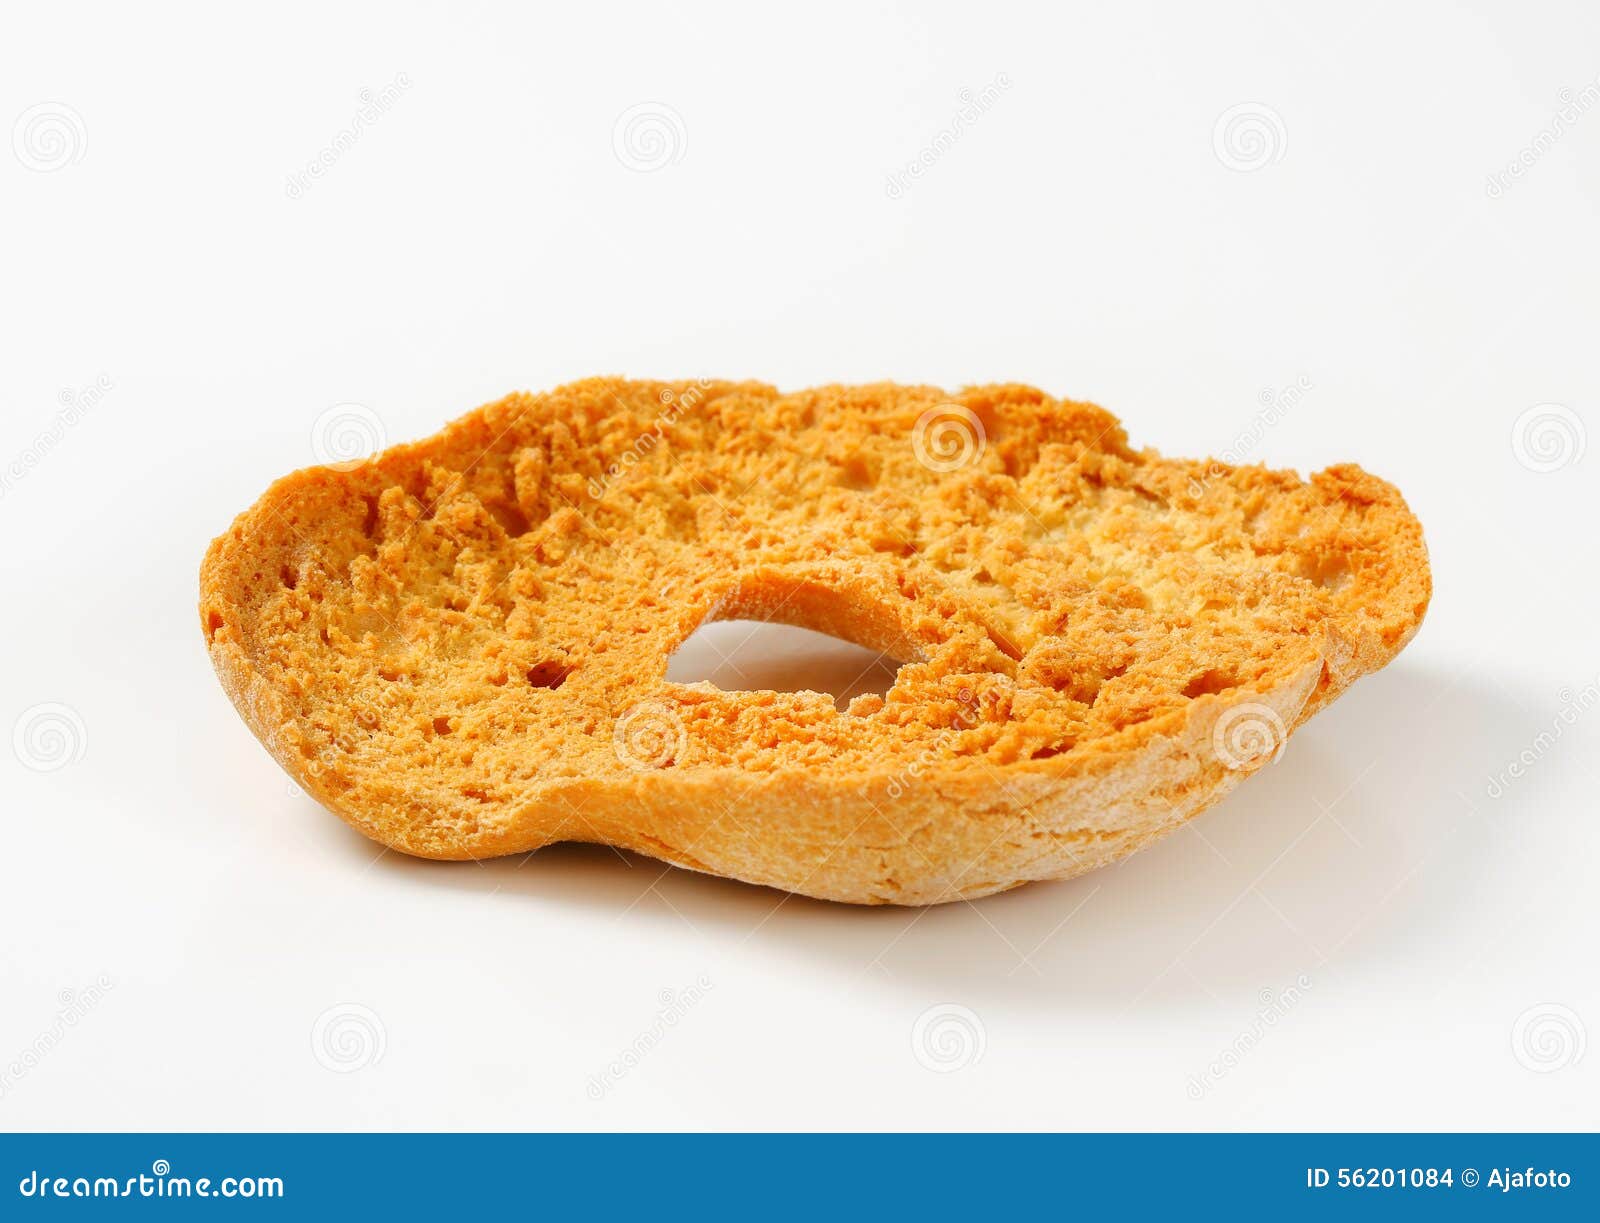 ring-d bread roll